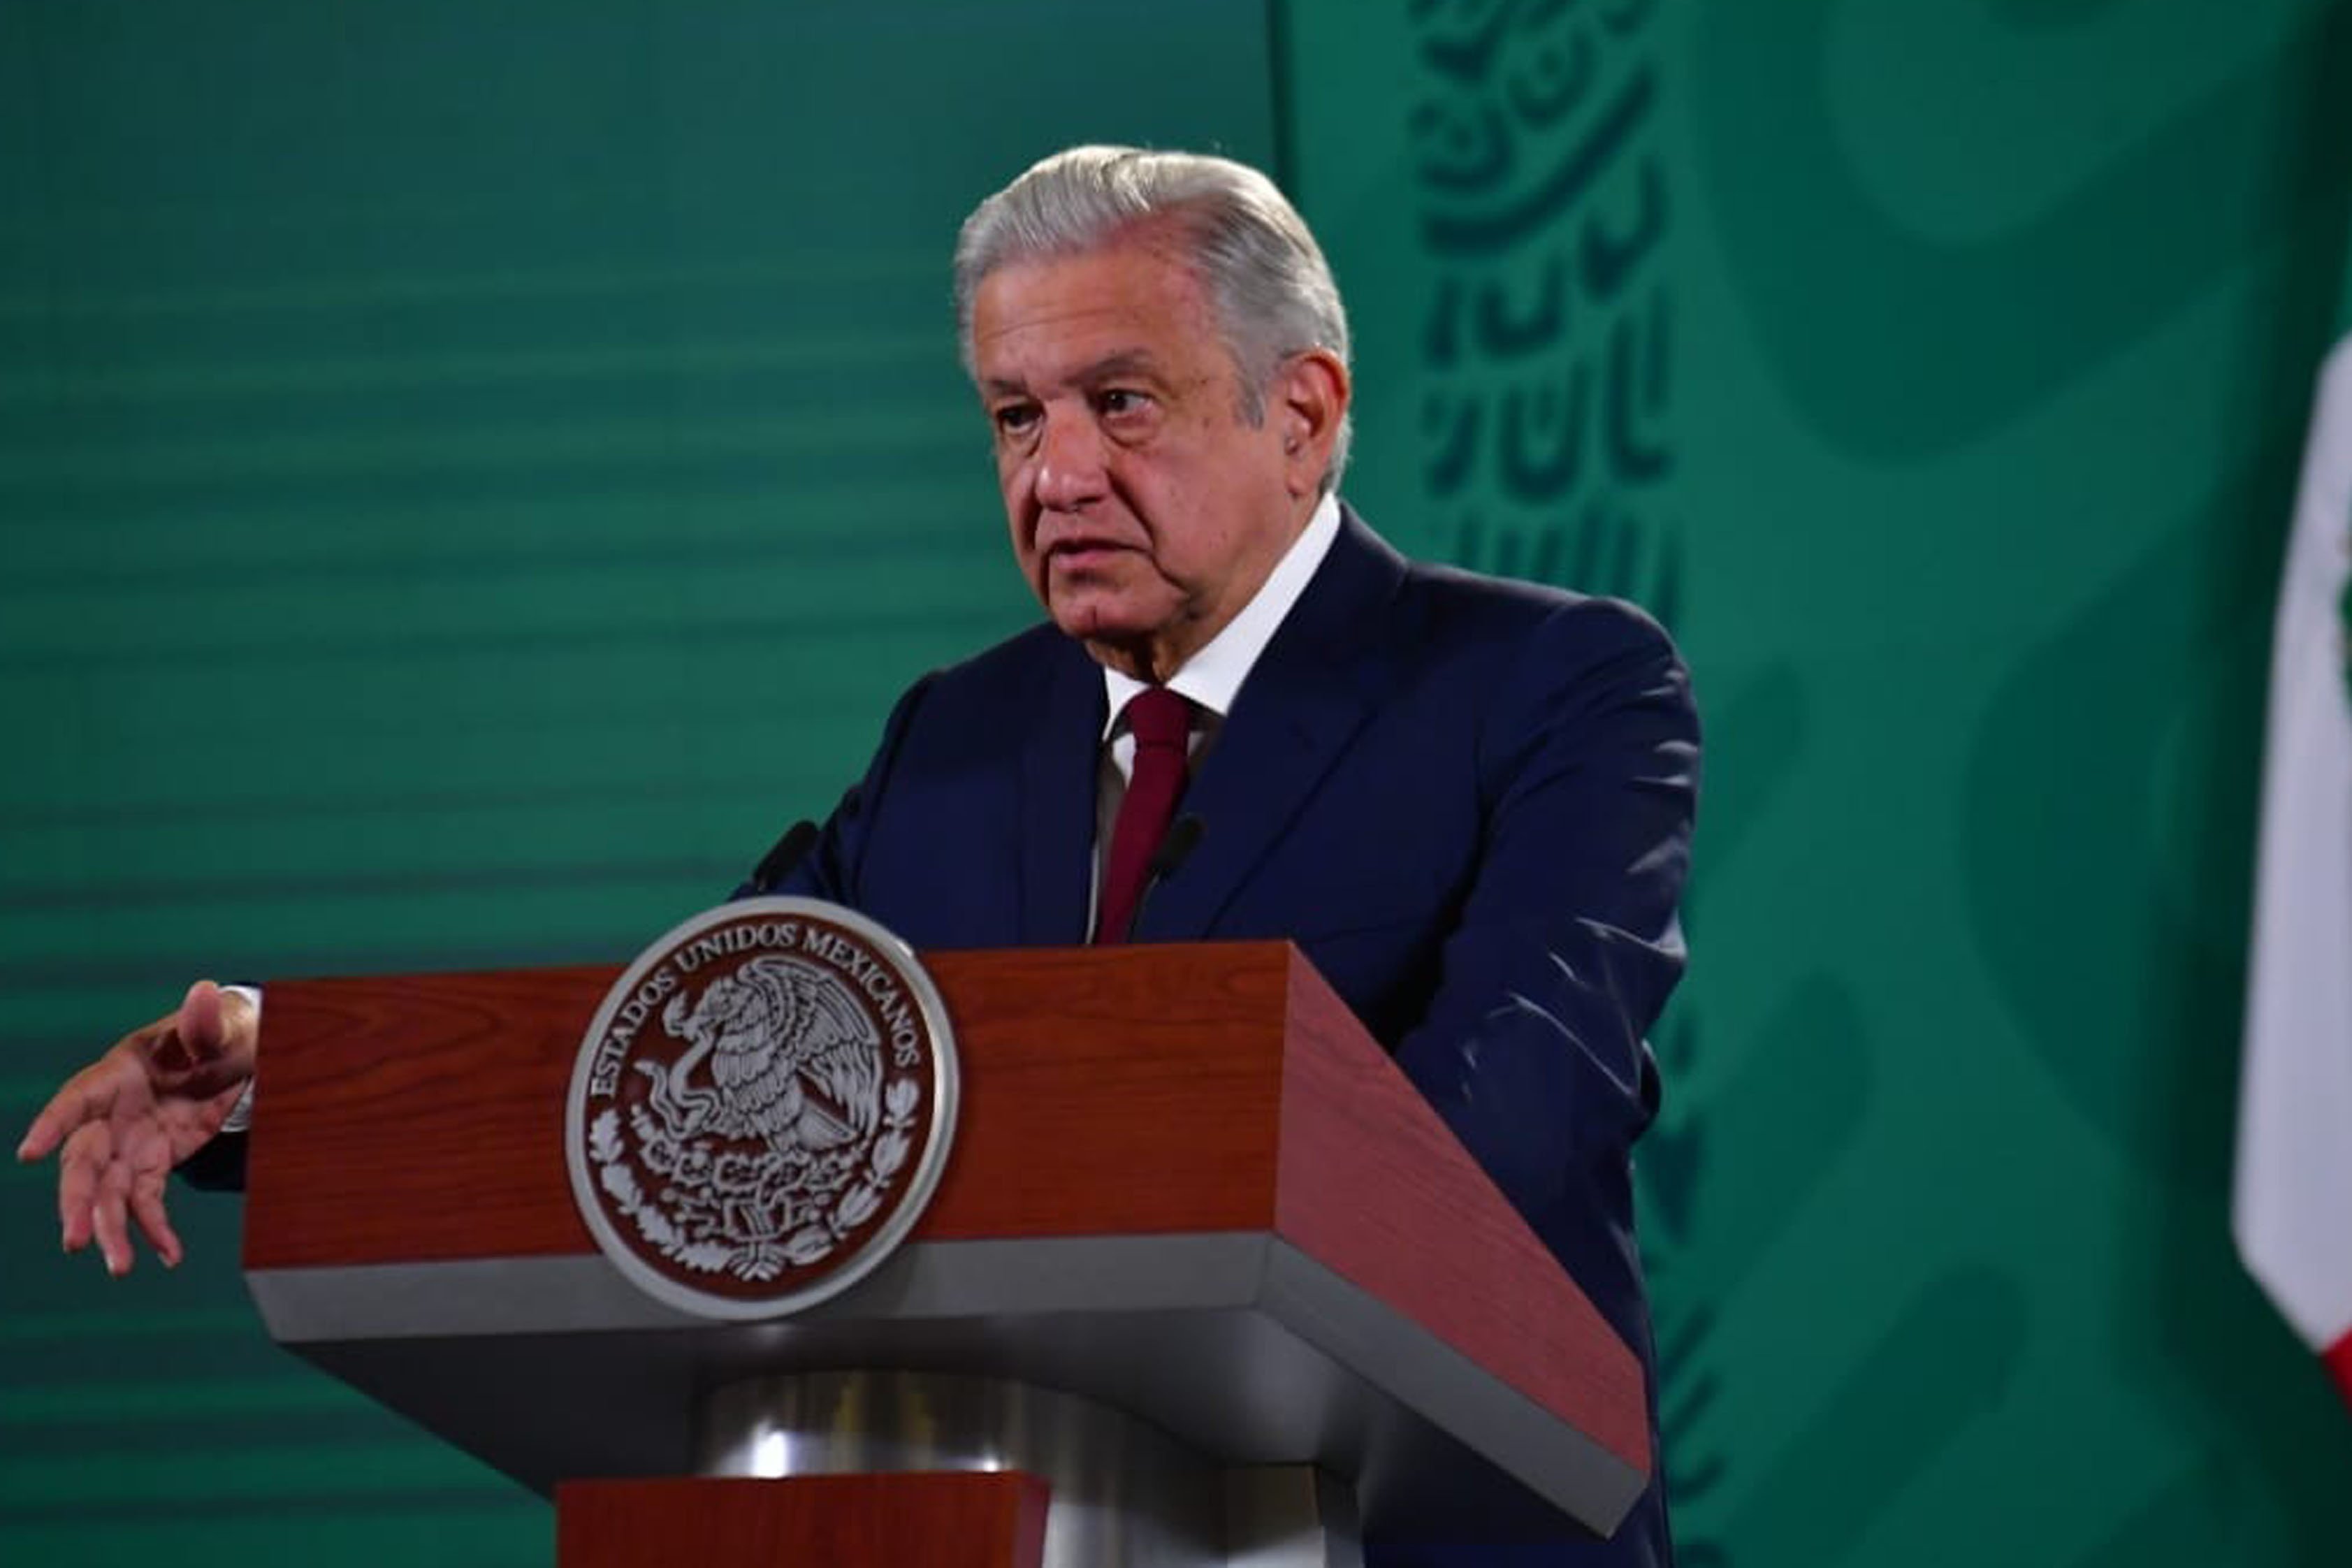 Zasca del presidente de México a Sánchez: "Parece un empleado de las eléctricas"